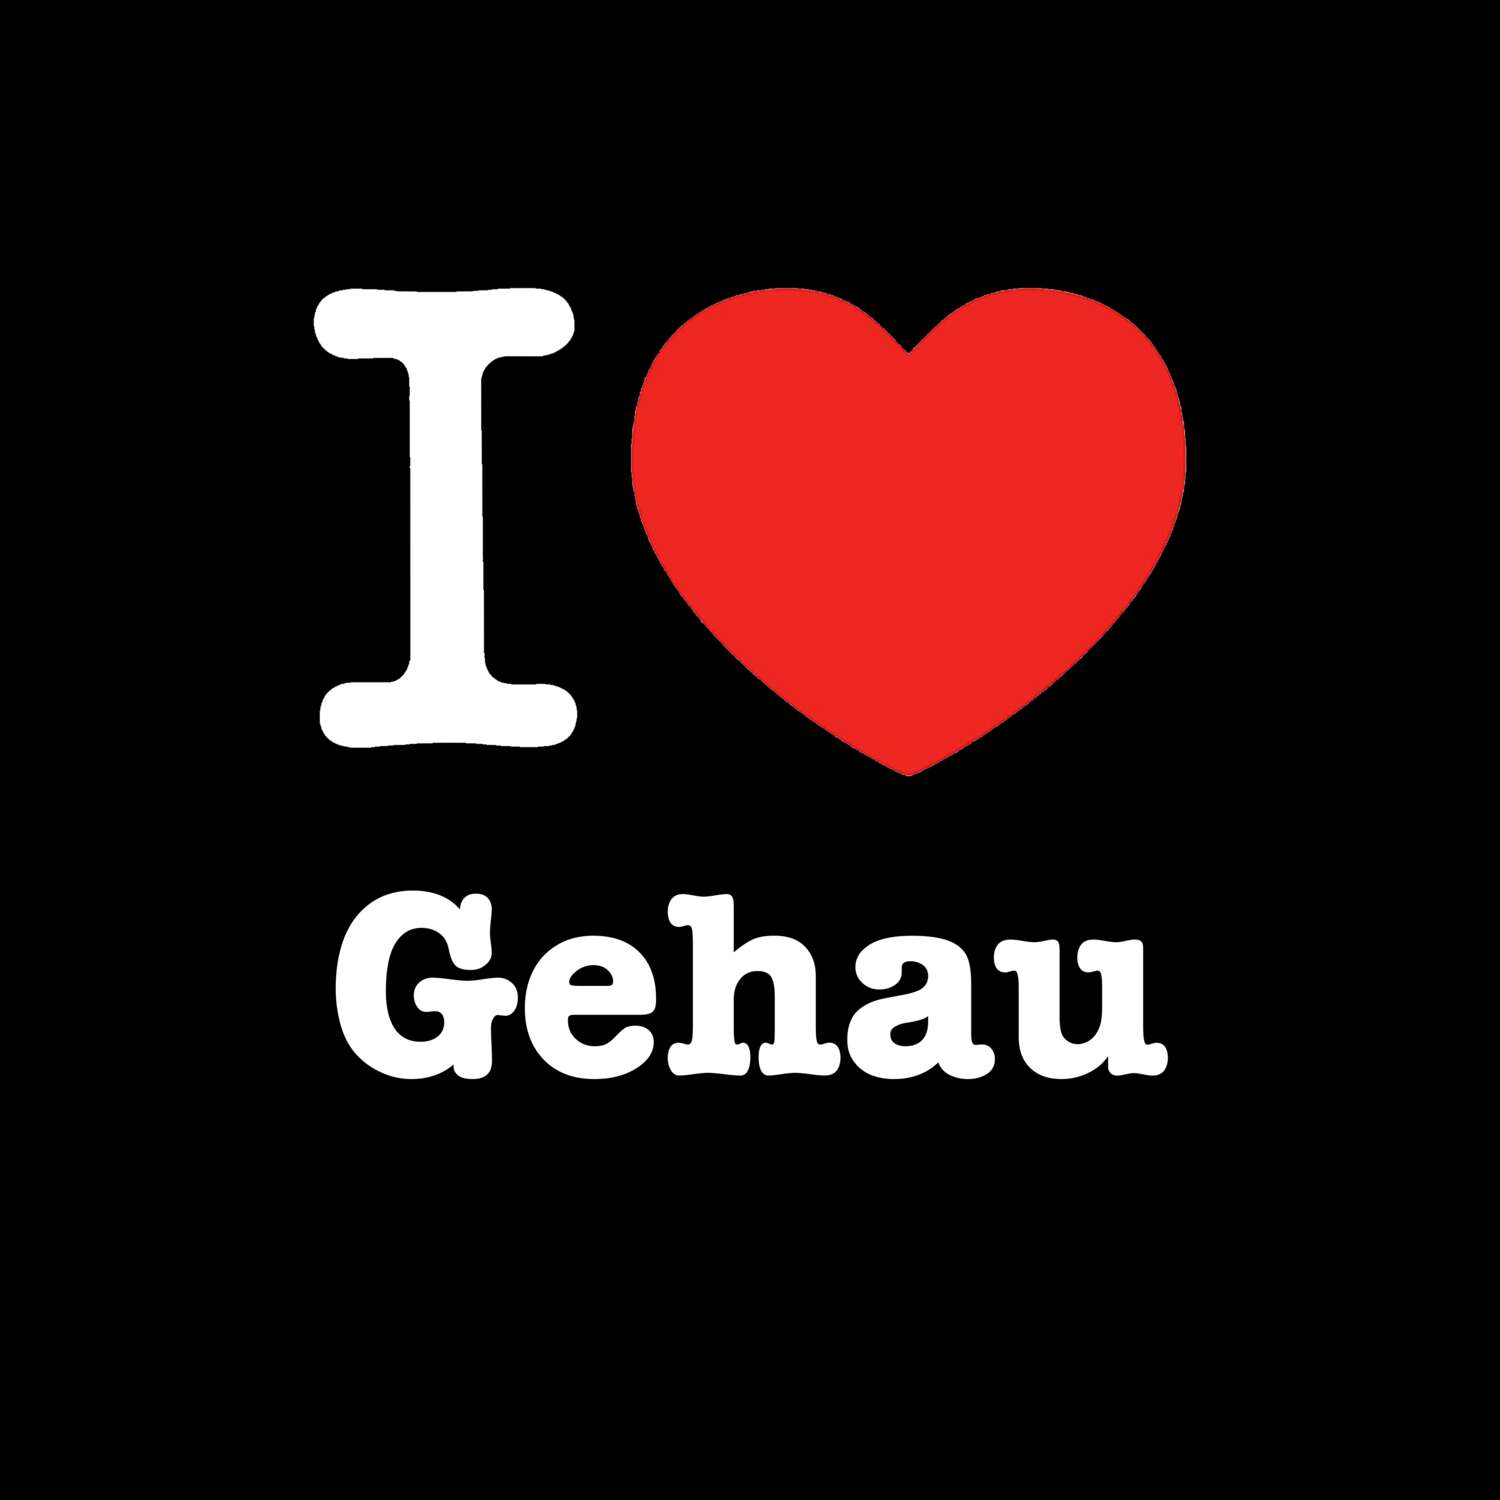 Gehau T-Shirt »I love«